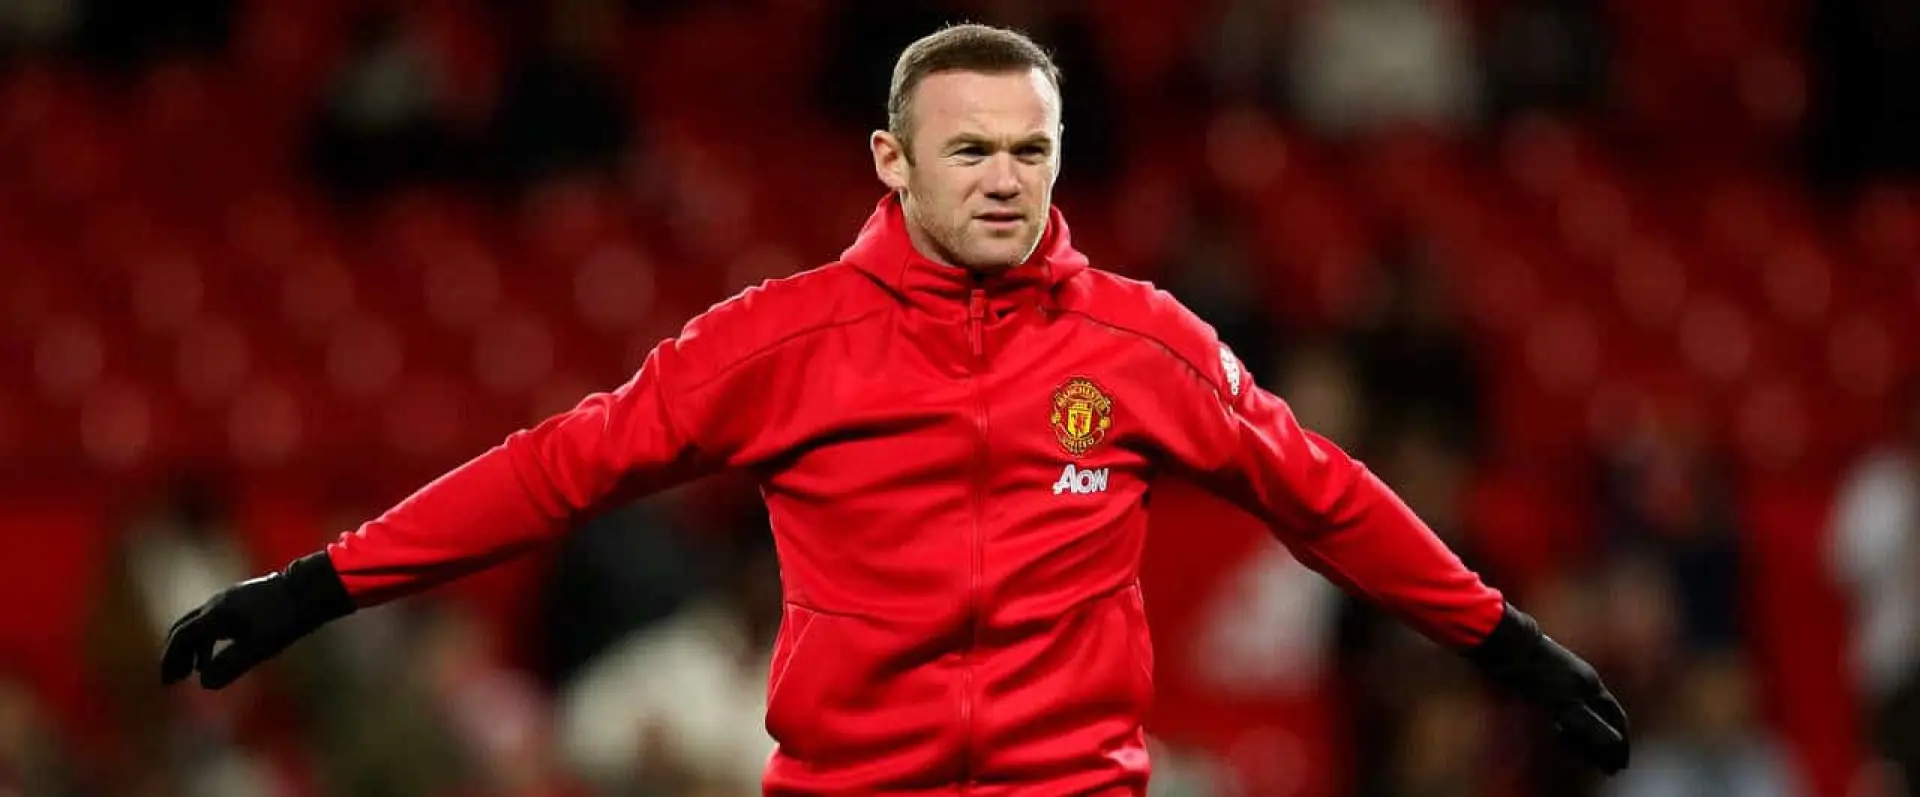 Wayne Rooney Man Utd scorer record Alan Shearer thoughts